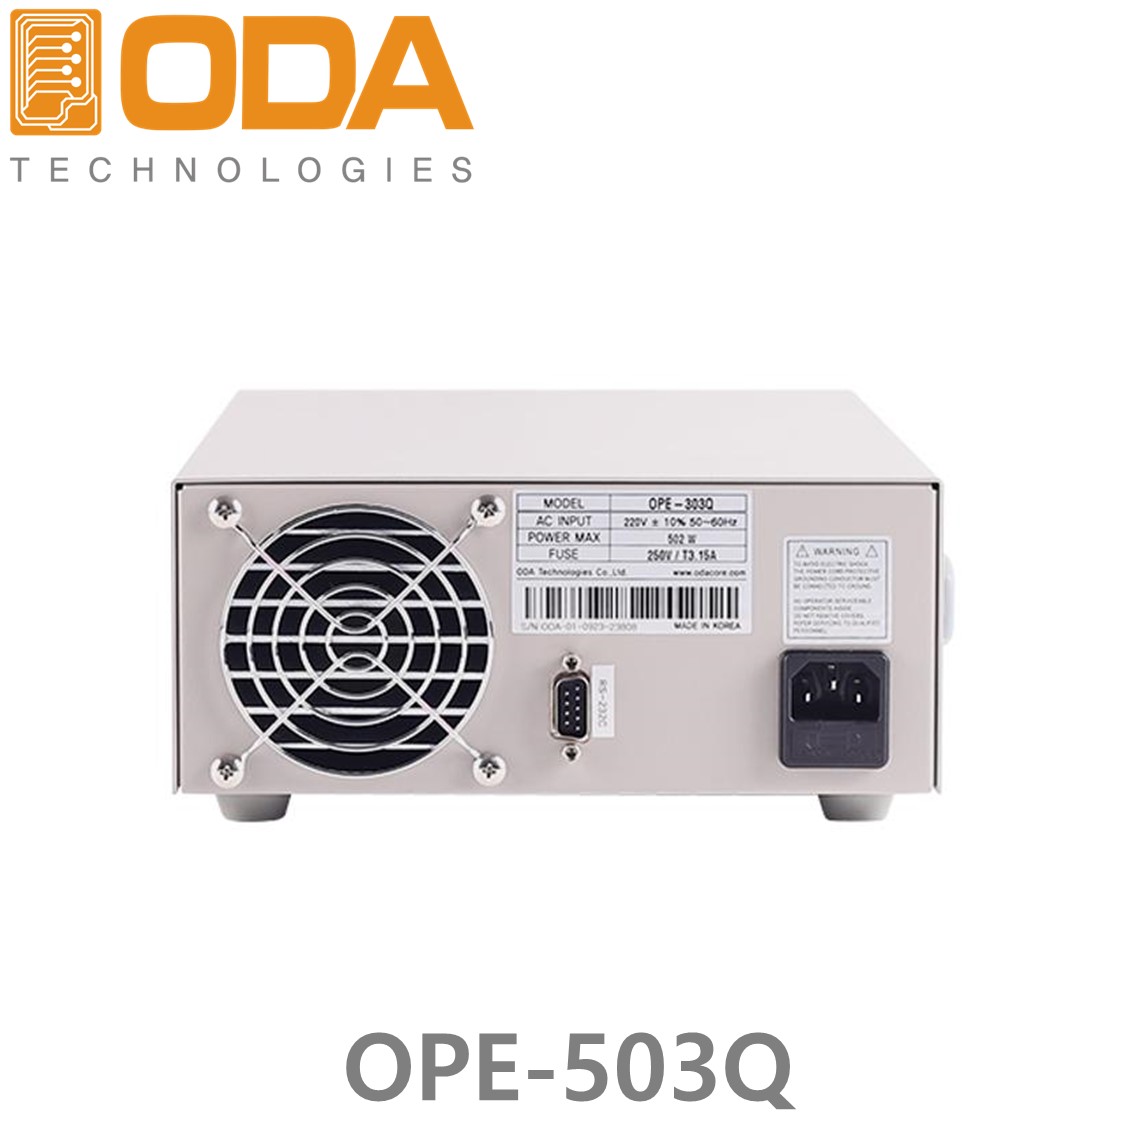 [ ODA ] OPE-503Q  4채널, ±50V/3A x 2채널, 5V/2A x 1채널, 15V/1A x 1채널 300W